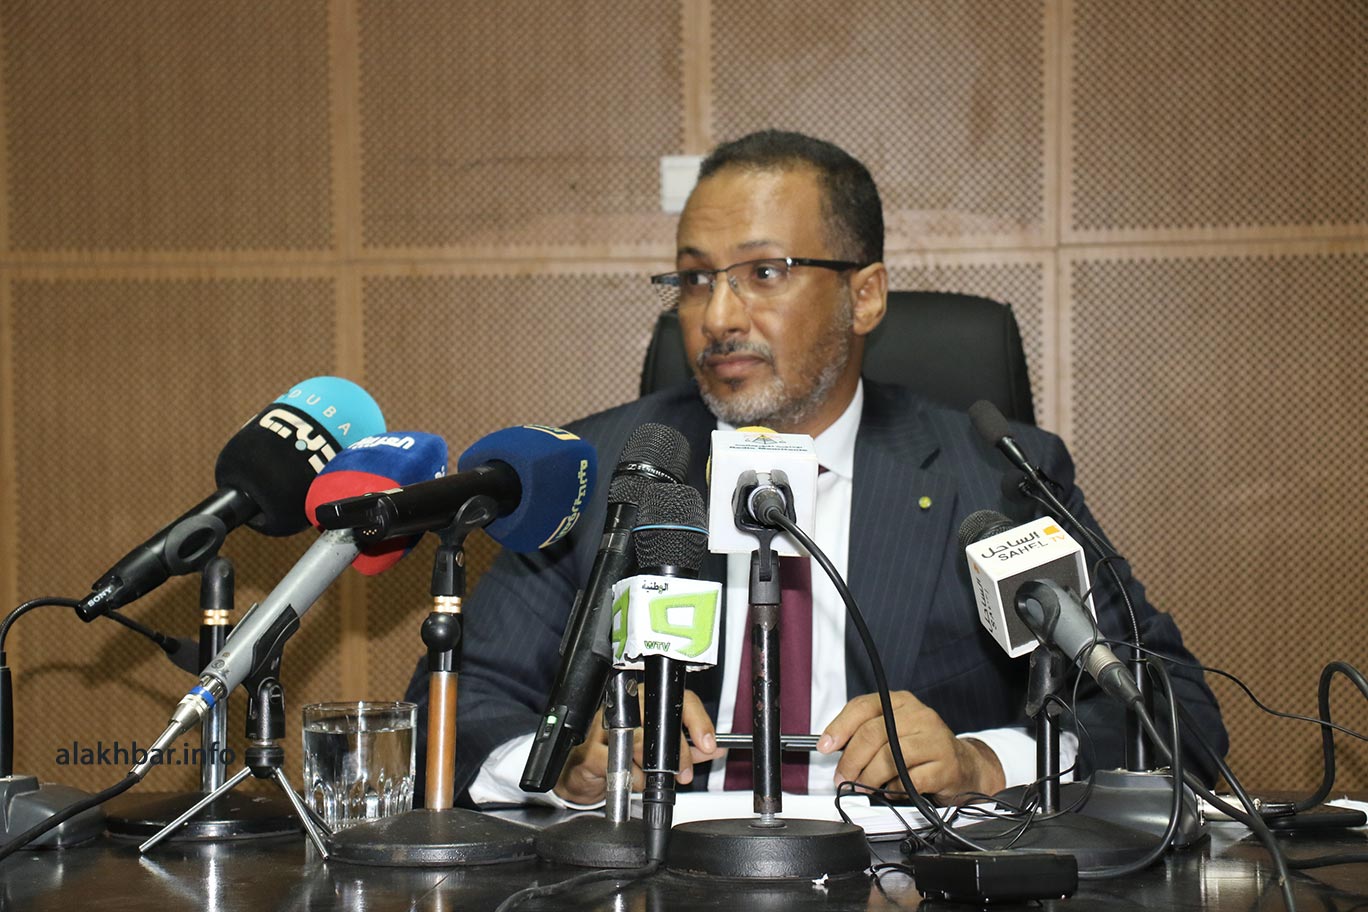 Mauritanie : Les entreprises nationales vont exécuter les travaux publics (UNPM)